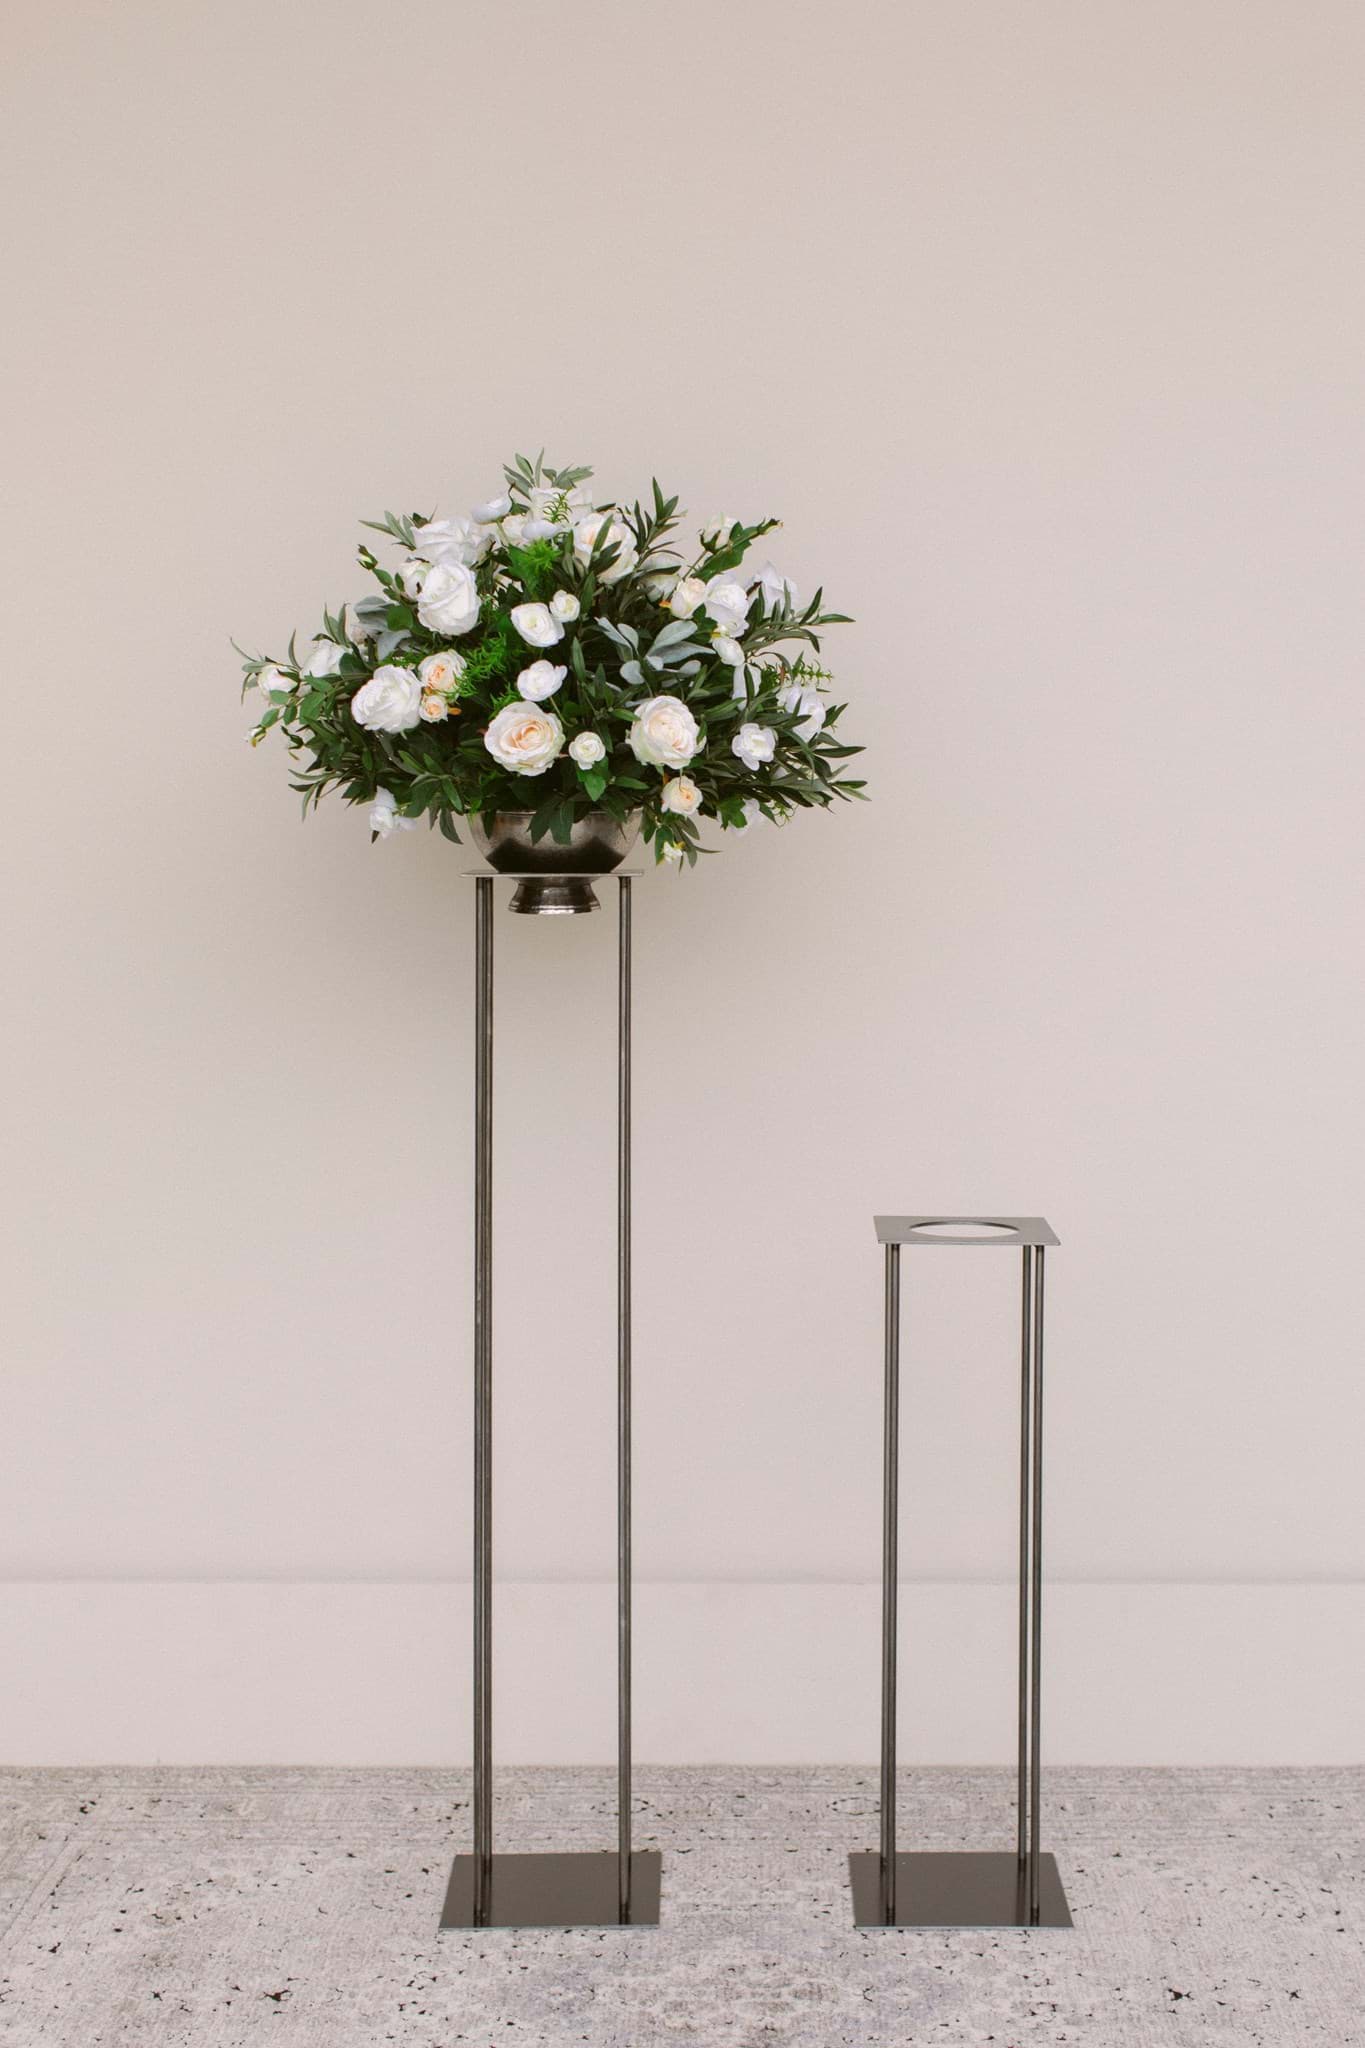 Glass vase Garden Arrangement - Centerpiece - Olivia's Flower Truck